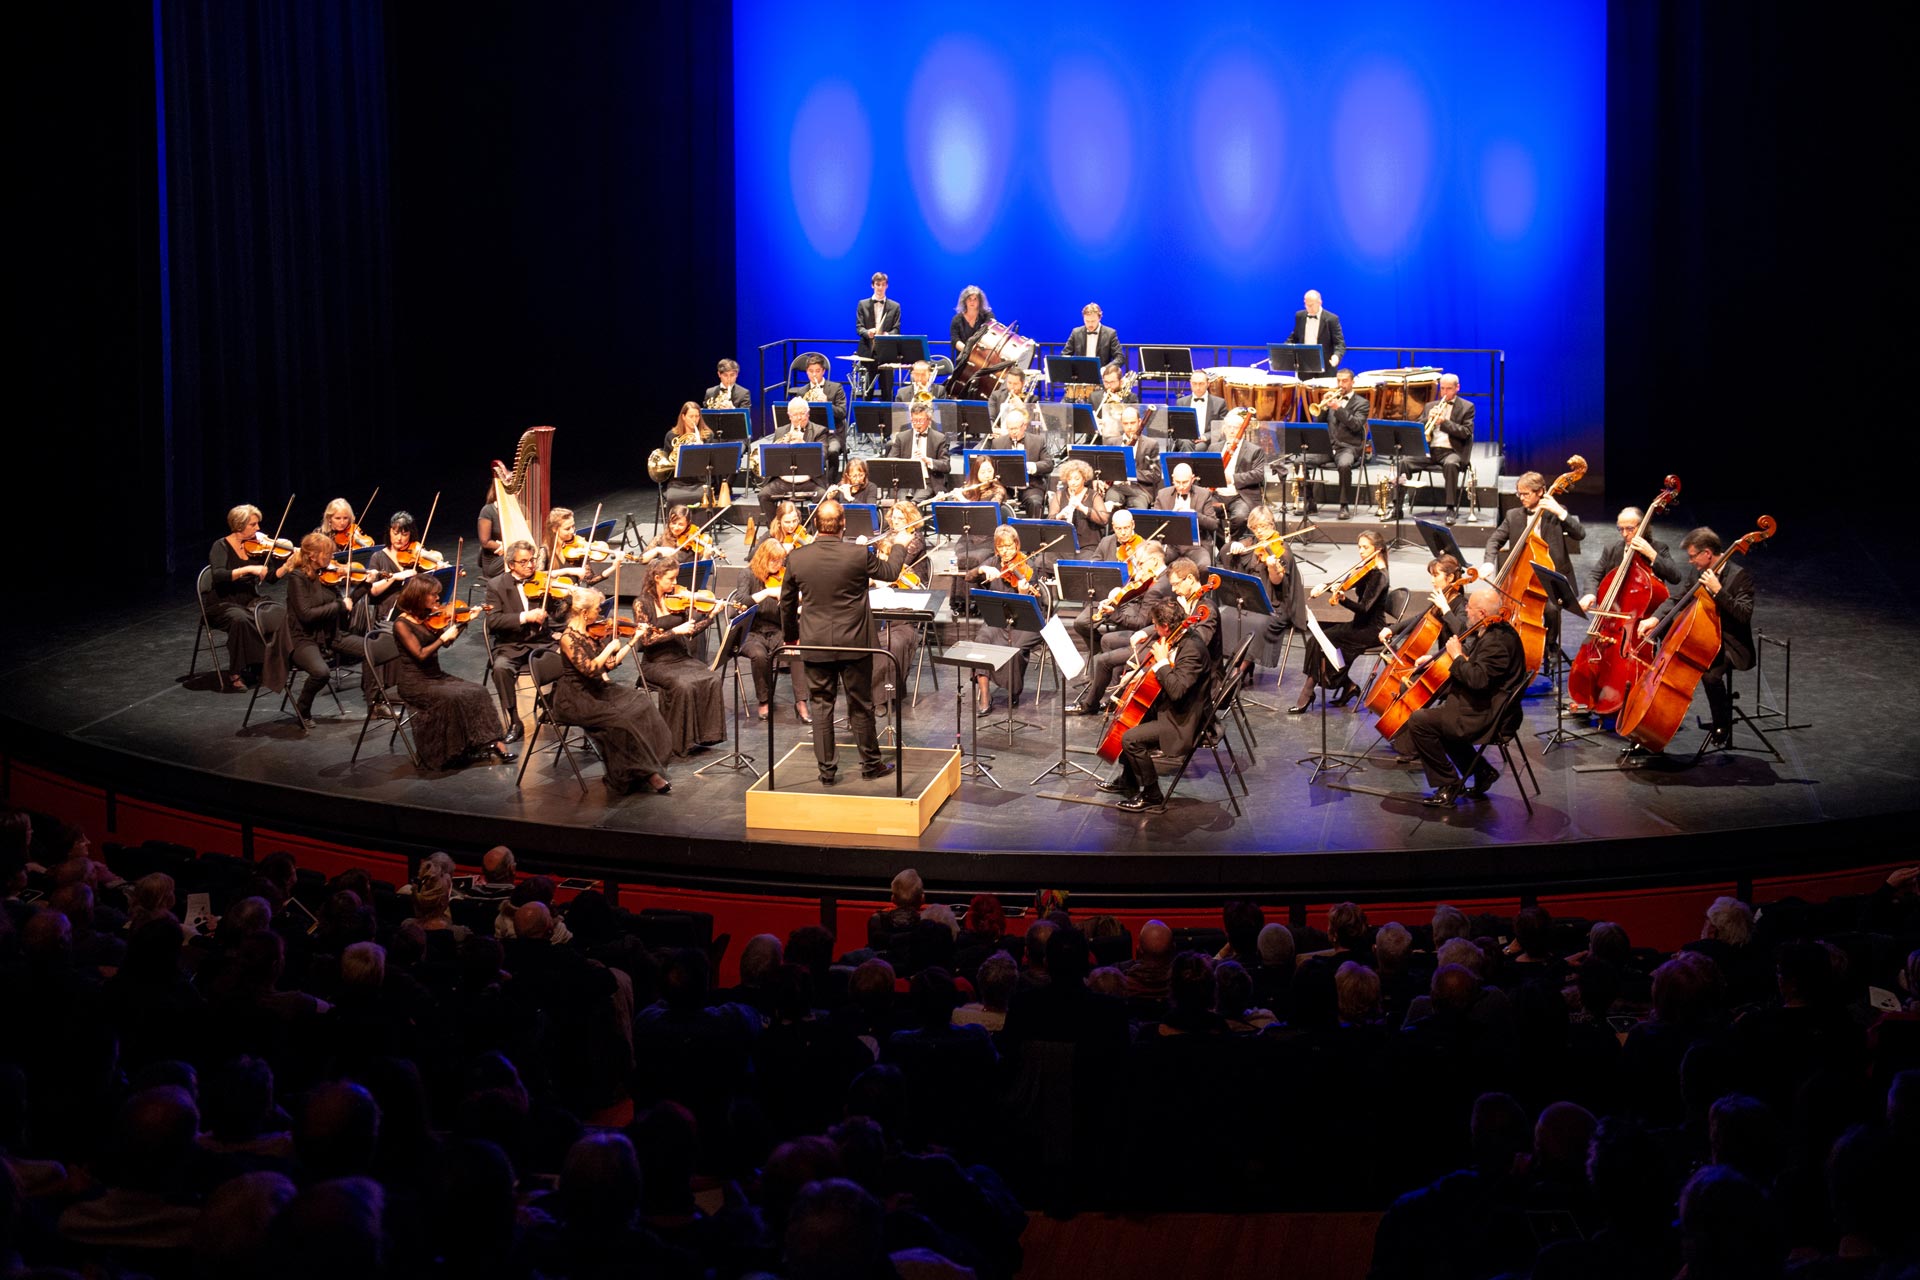 Melody Louledjian accompagnera le chef d’orchestre Samuel Jean aux côtés des 50 musiciens de l’orchestre Avignon-Provence.